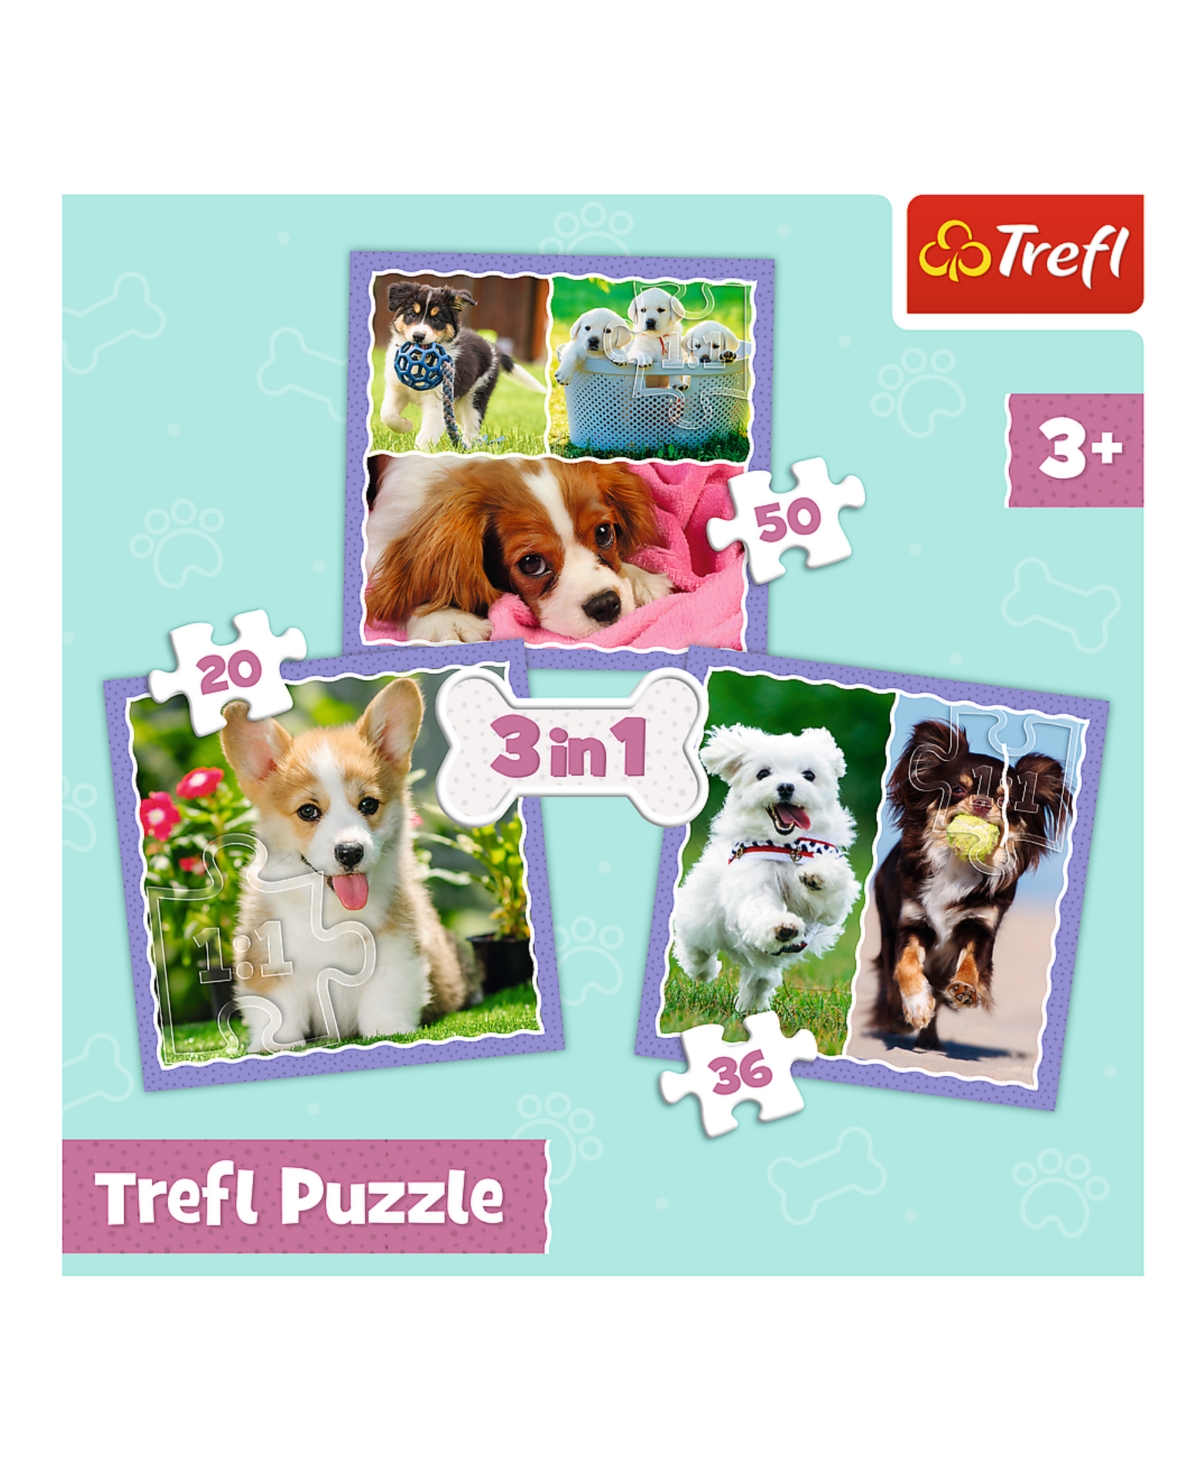 Trefl Kids' Preschool 3 In 1 Puzzle- Lovely Dogs In Multi